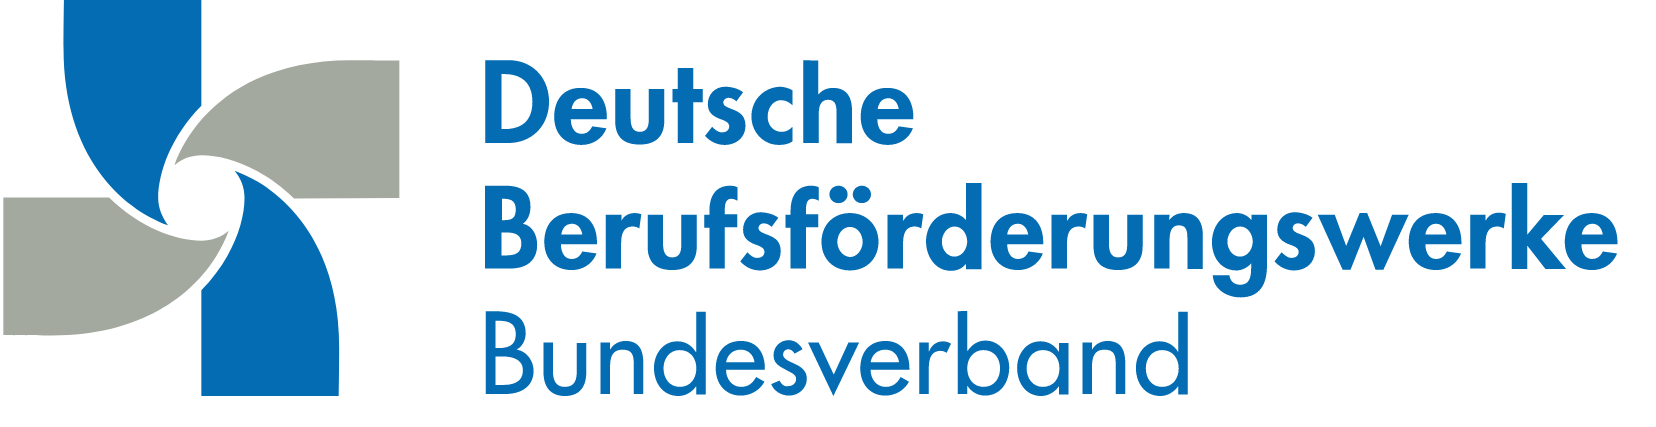 Bundesverband Deutscher Berufsförderungswerke e. V. Logo